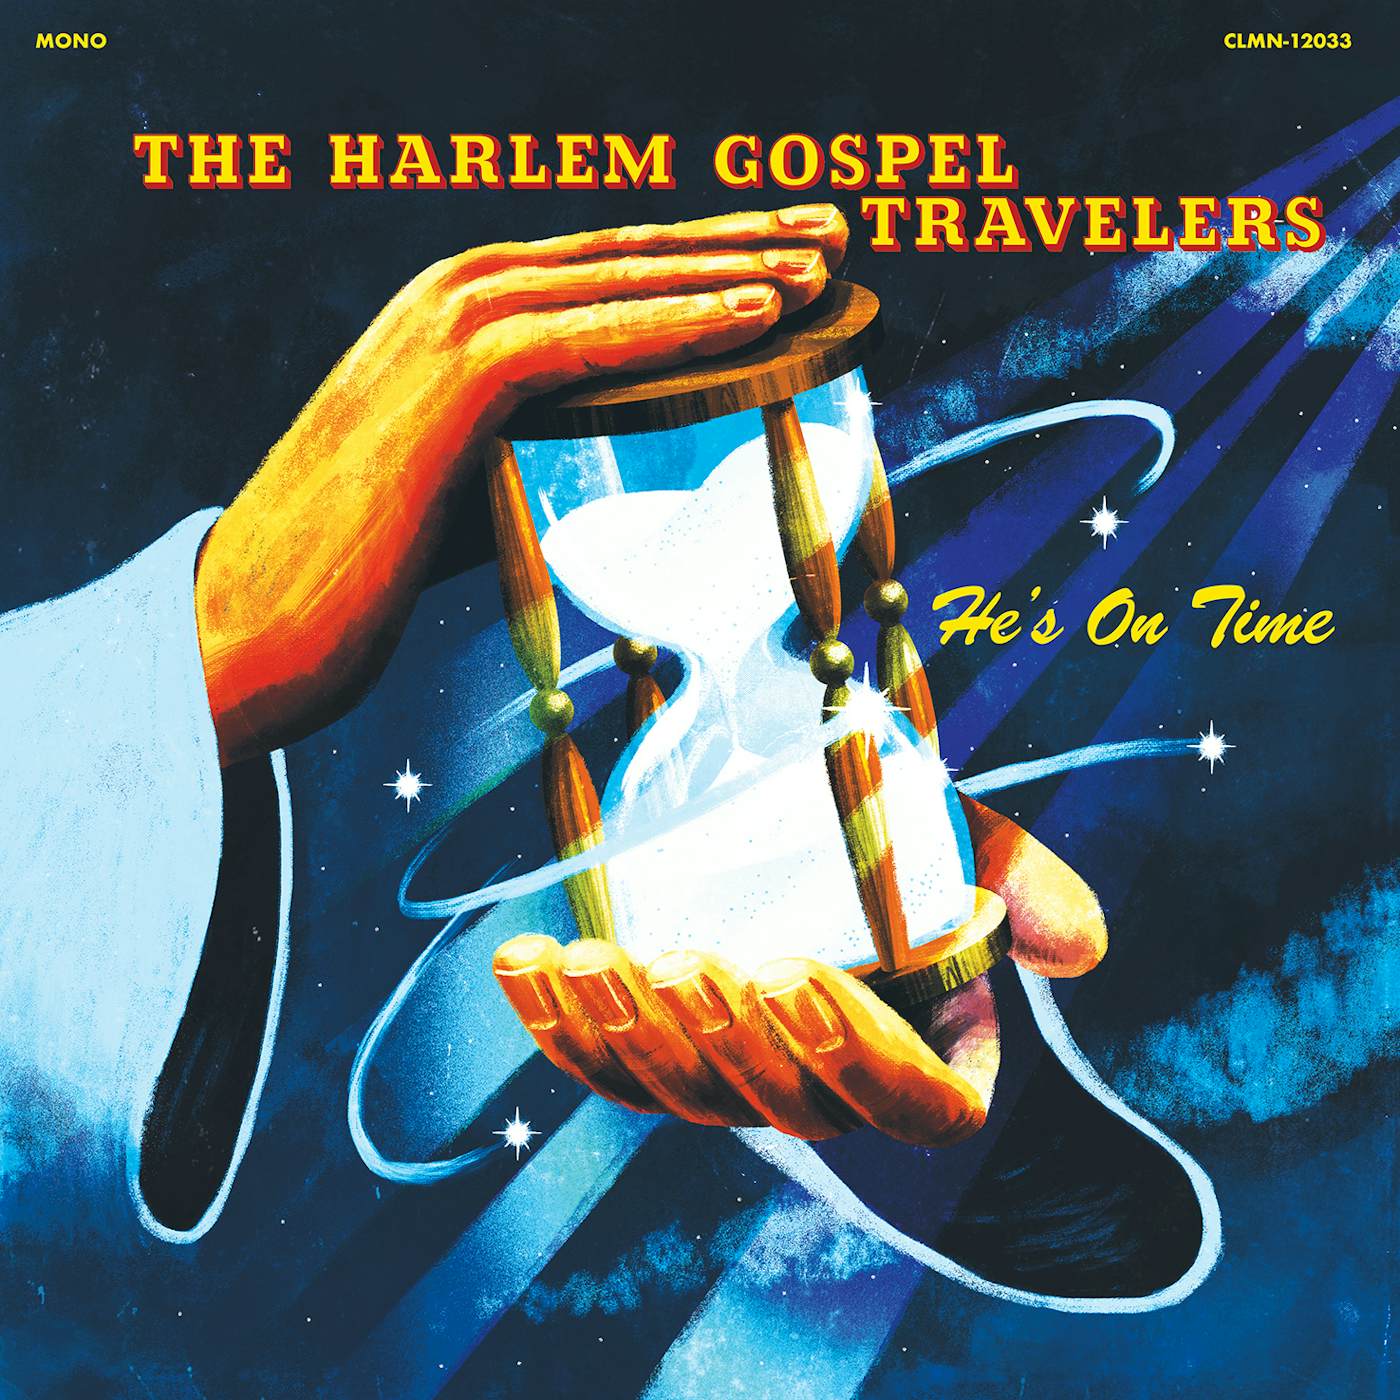 The Harlem Gospel Travelers HE'S ON TIME CD